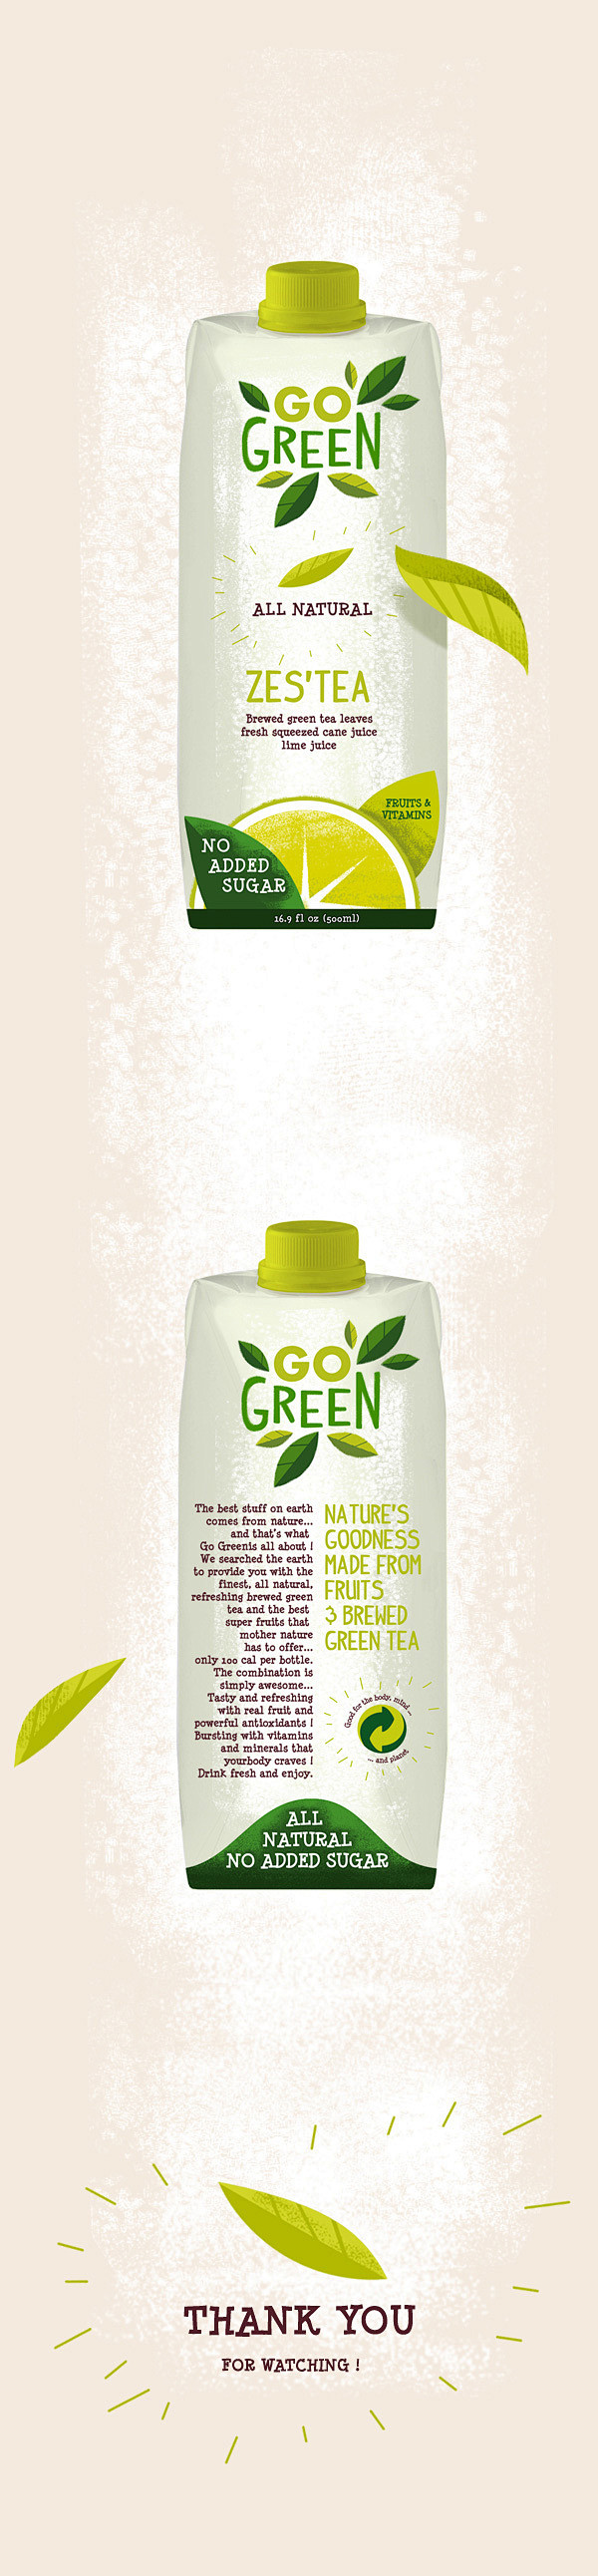 GO Green branding & ...